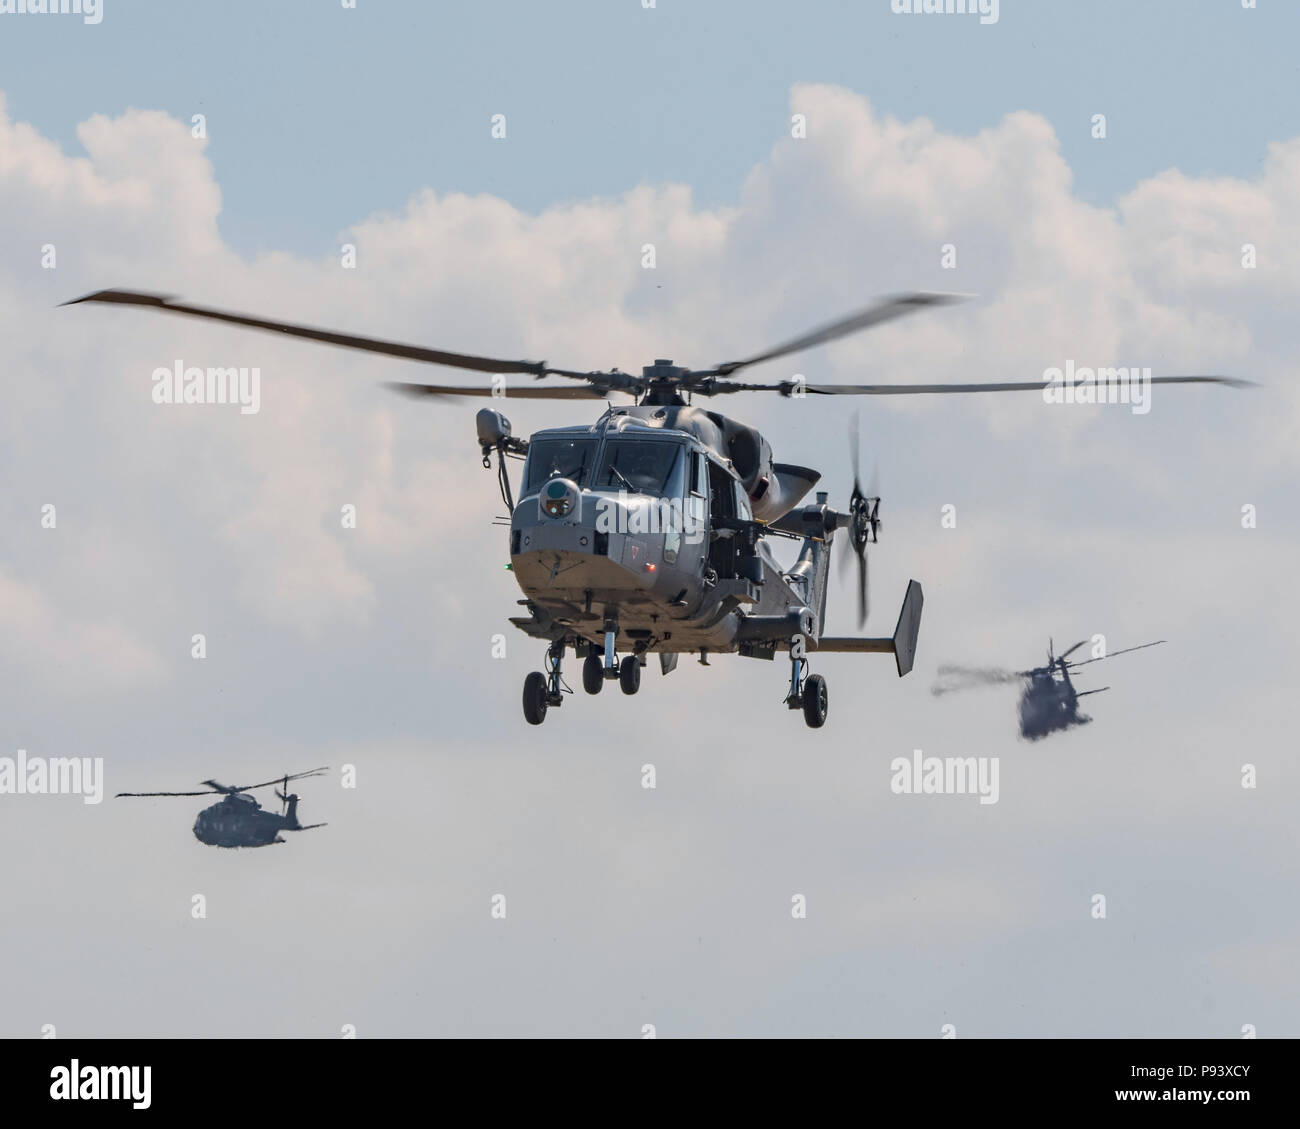 Wildcat et hélicoptères Merlin prenant part à l'assaut du Commando à la Journée de l'air de Yeovilton, Yeovilton, Royaume-Uni le 7 juillet 2018. Banque D'Images